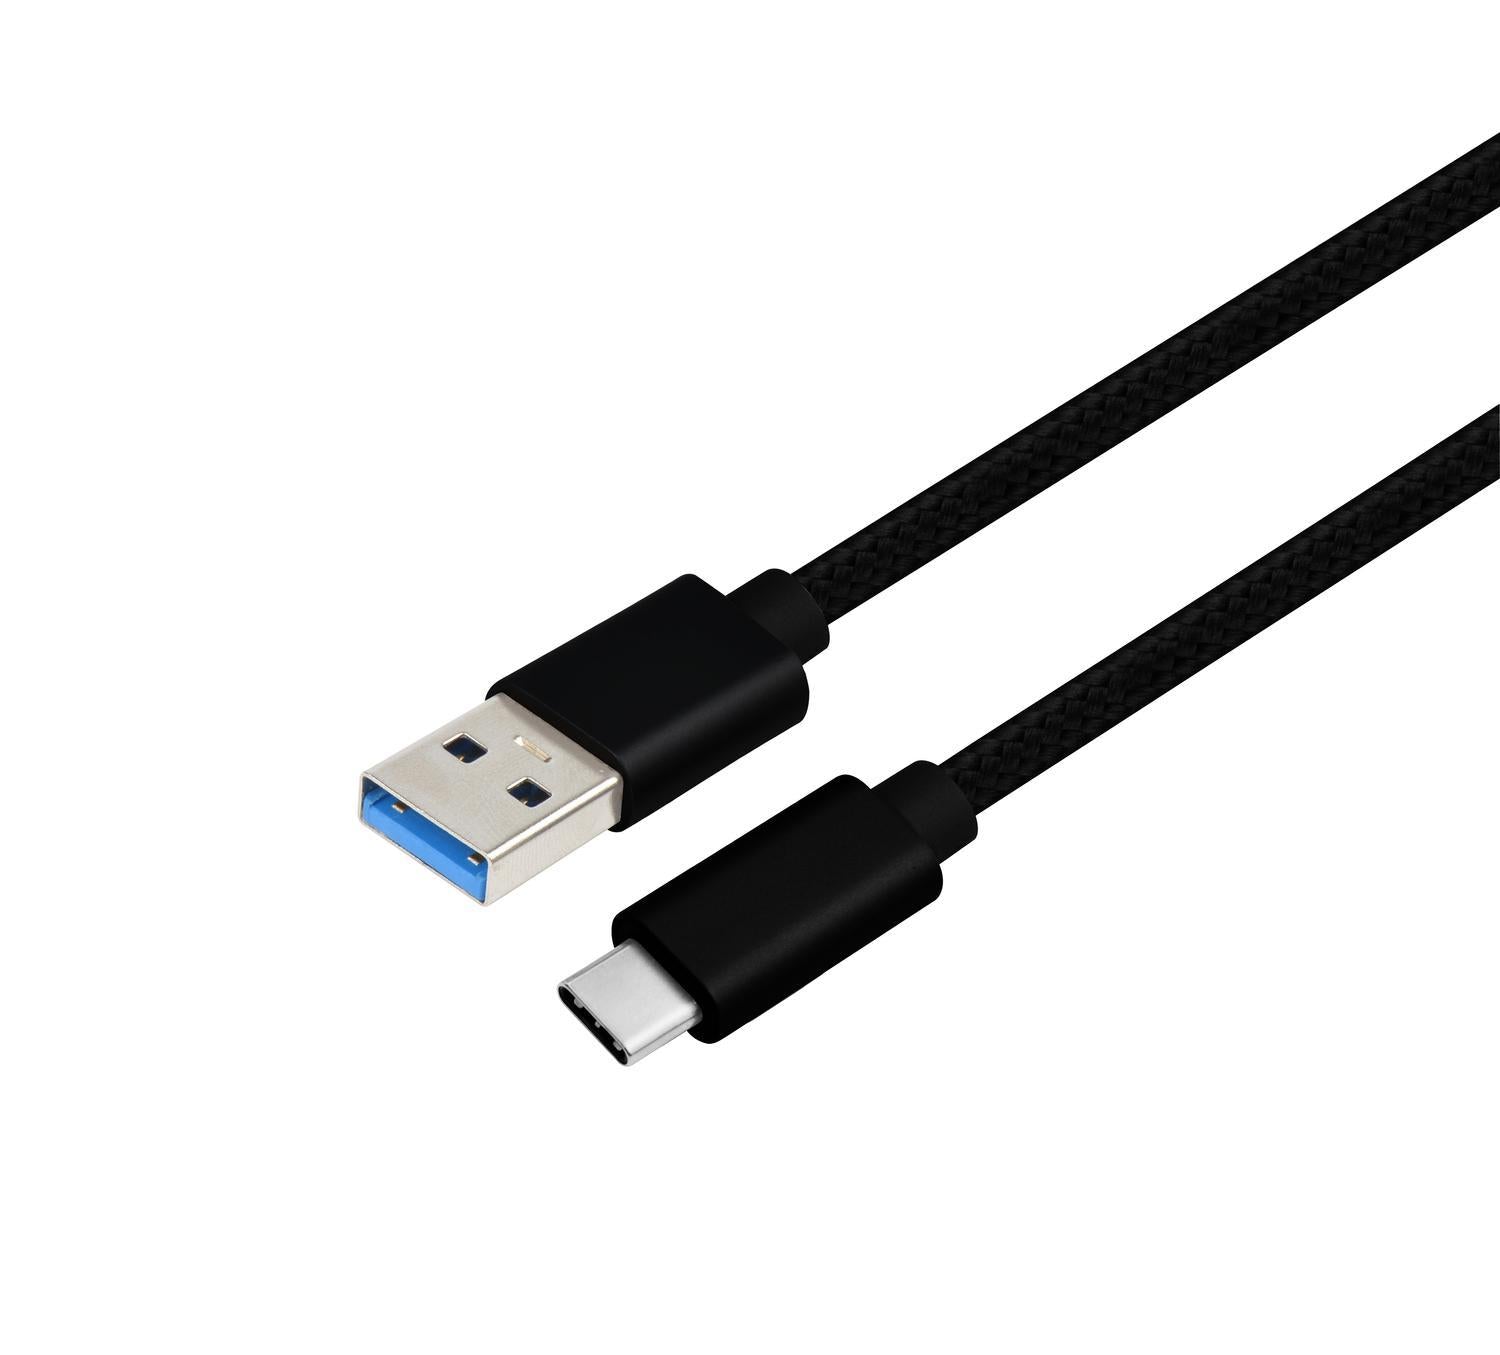 NÖRDIC 2M USB C til USB En kabel USB3.1 Gen1 Rask lading 60W 5Gbps 3a, Nylon flettet svart